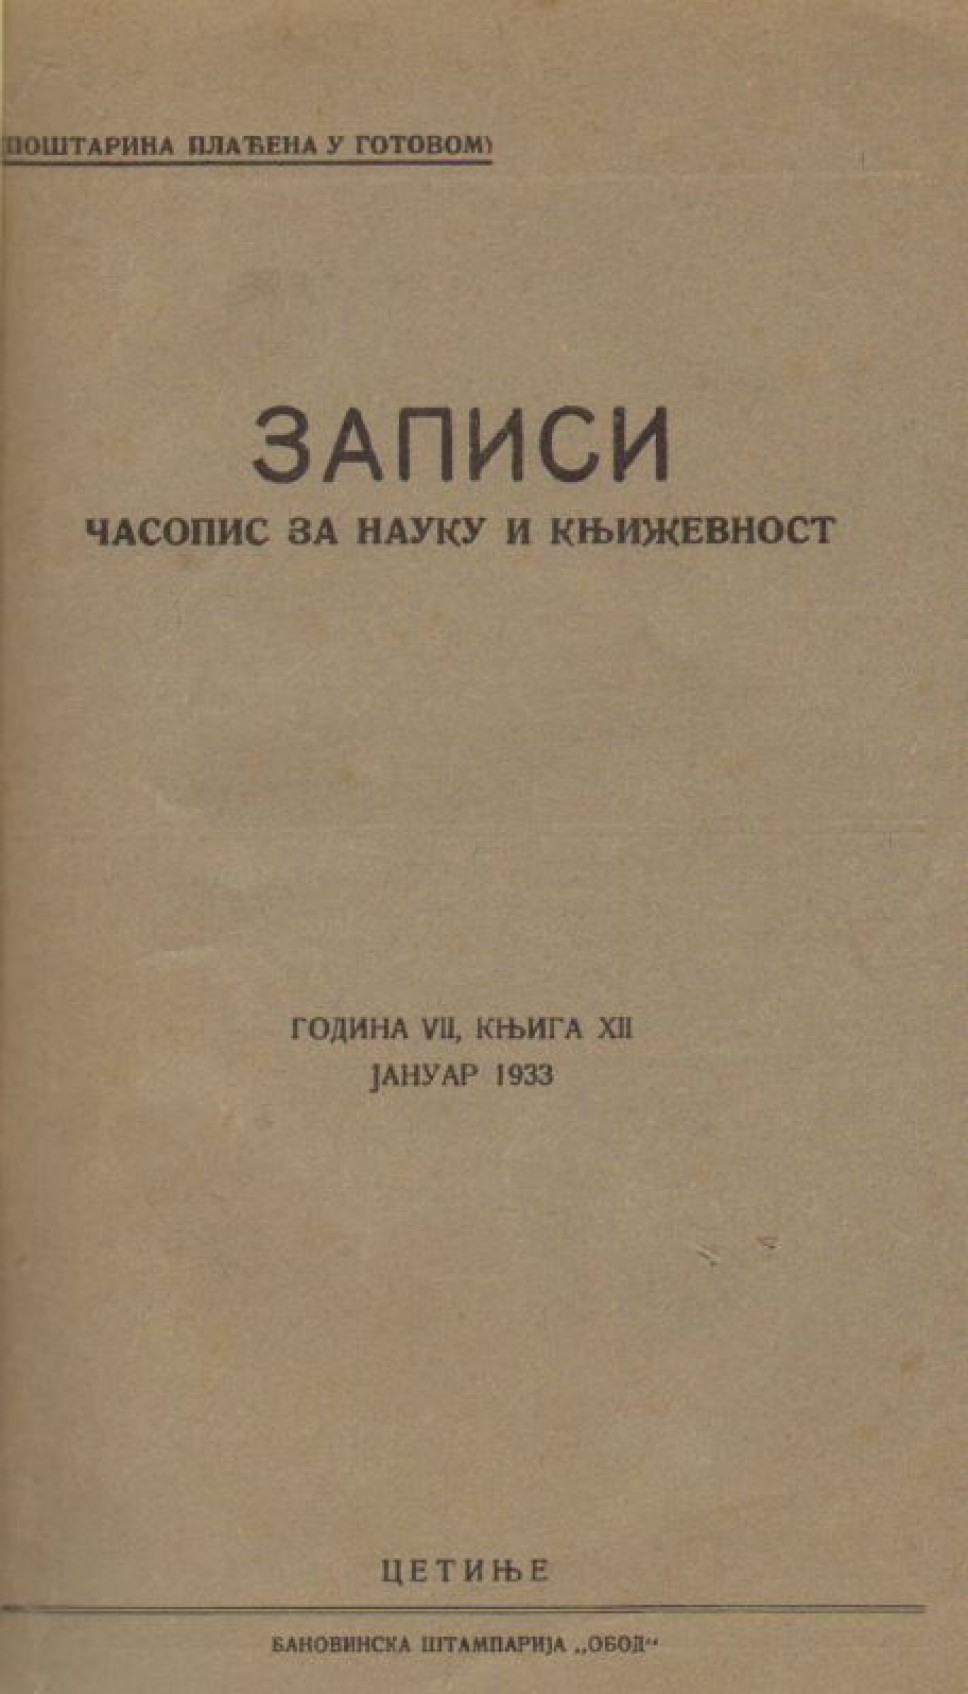 Zapisi 1933